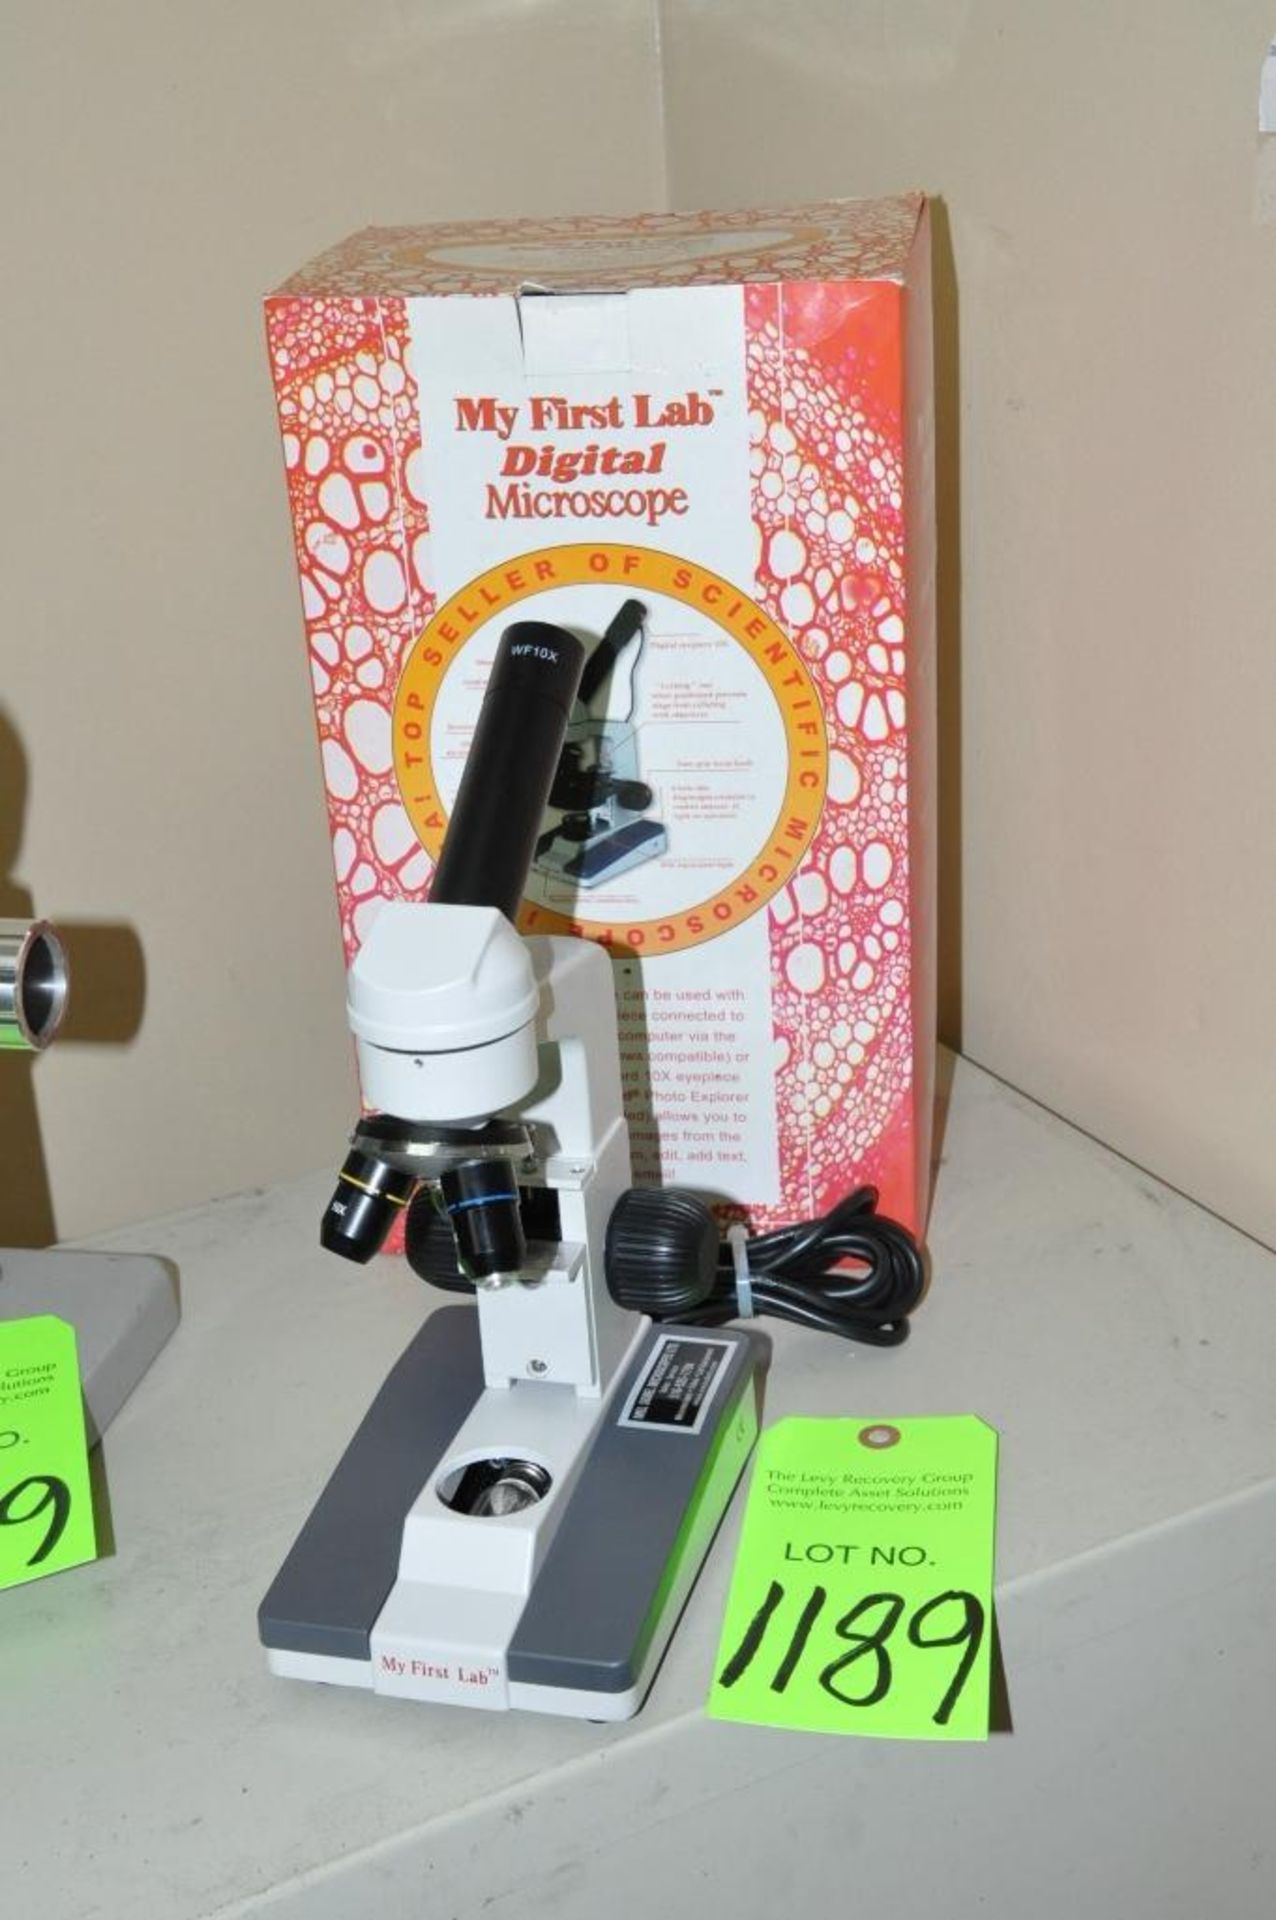 Lot-(1) "My First Lab" 10x Digital Microscope and (1) Titan 20x